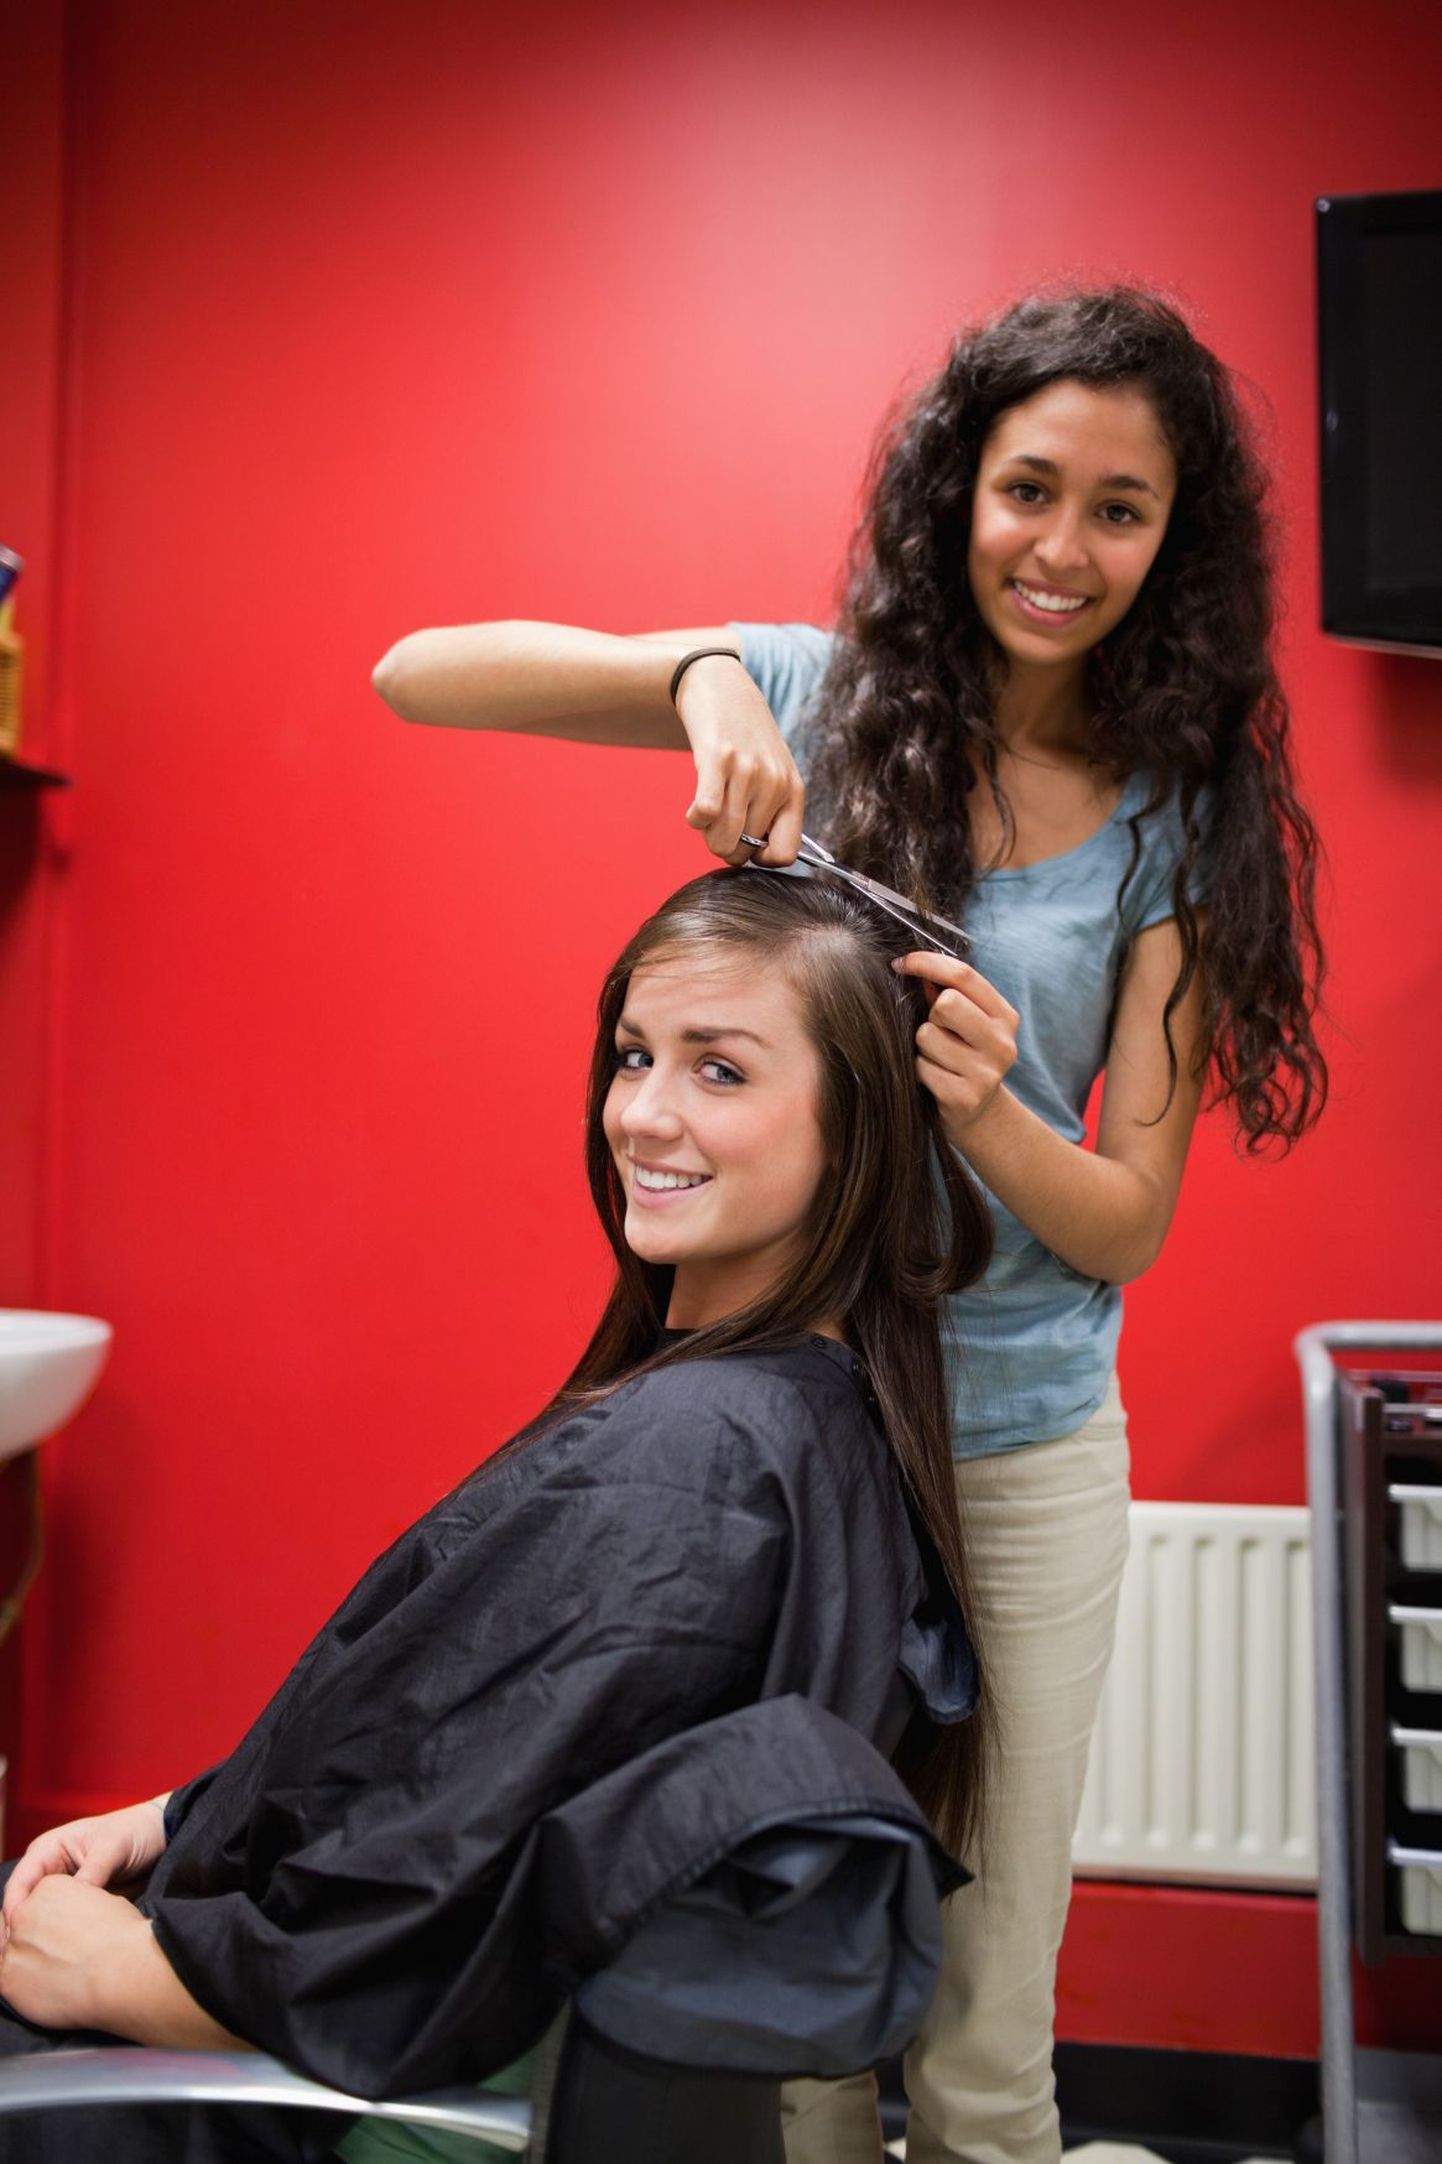 Tallinnas maksab naiste juukselõikus šveitslaste kogutud andmete kohaselt keskmiselt 25,66 eurot.